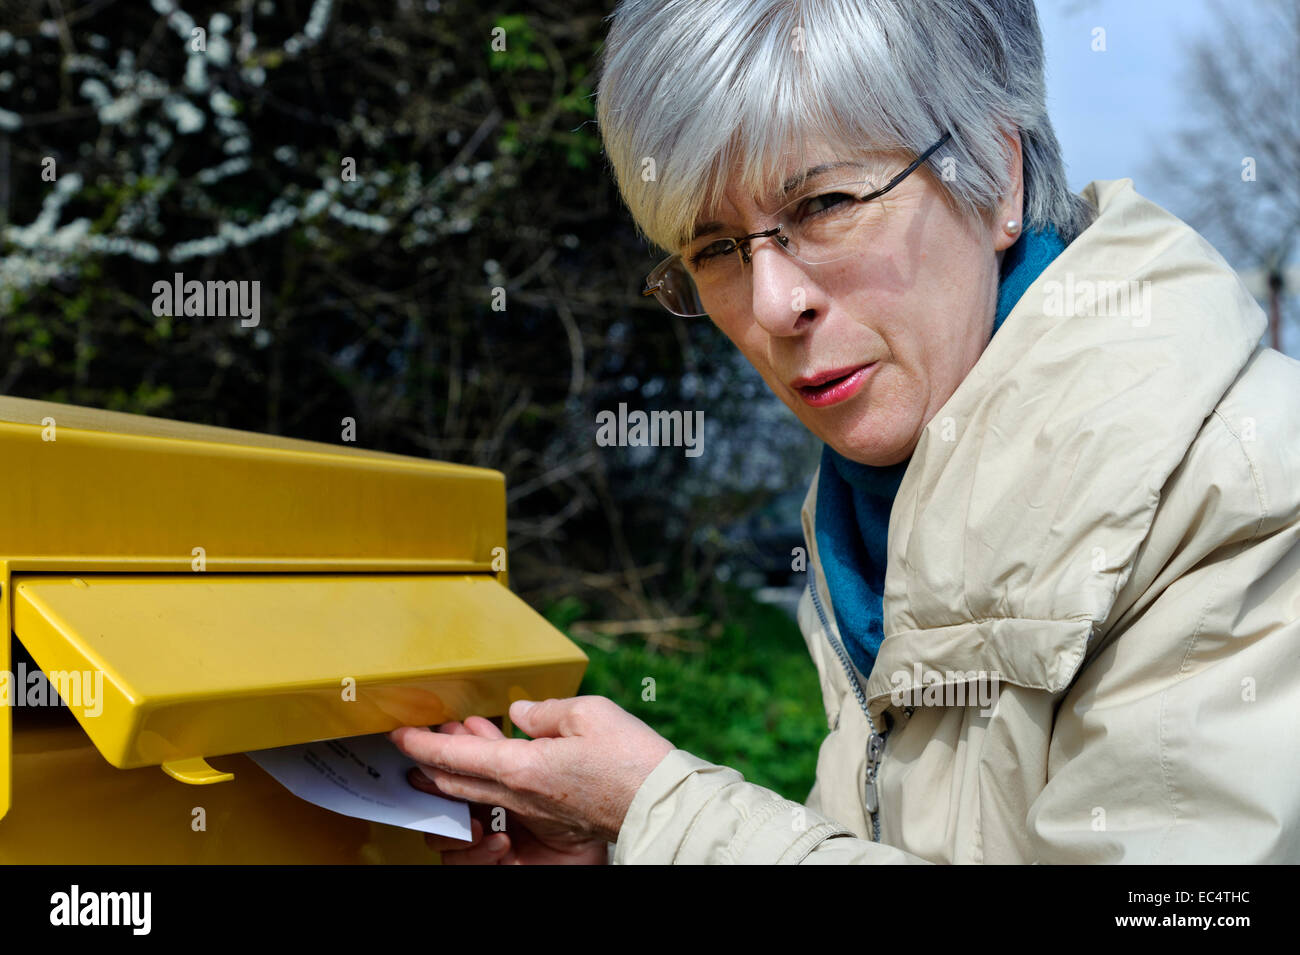 Une femme met une lettre dans la boîte aux lettres Banque D'Images